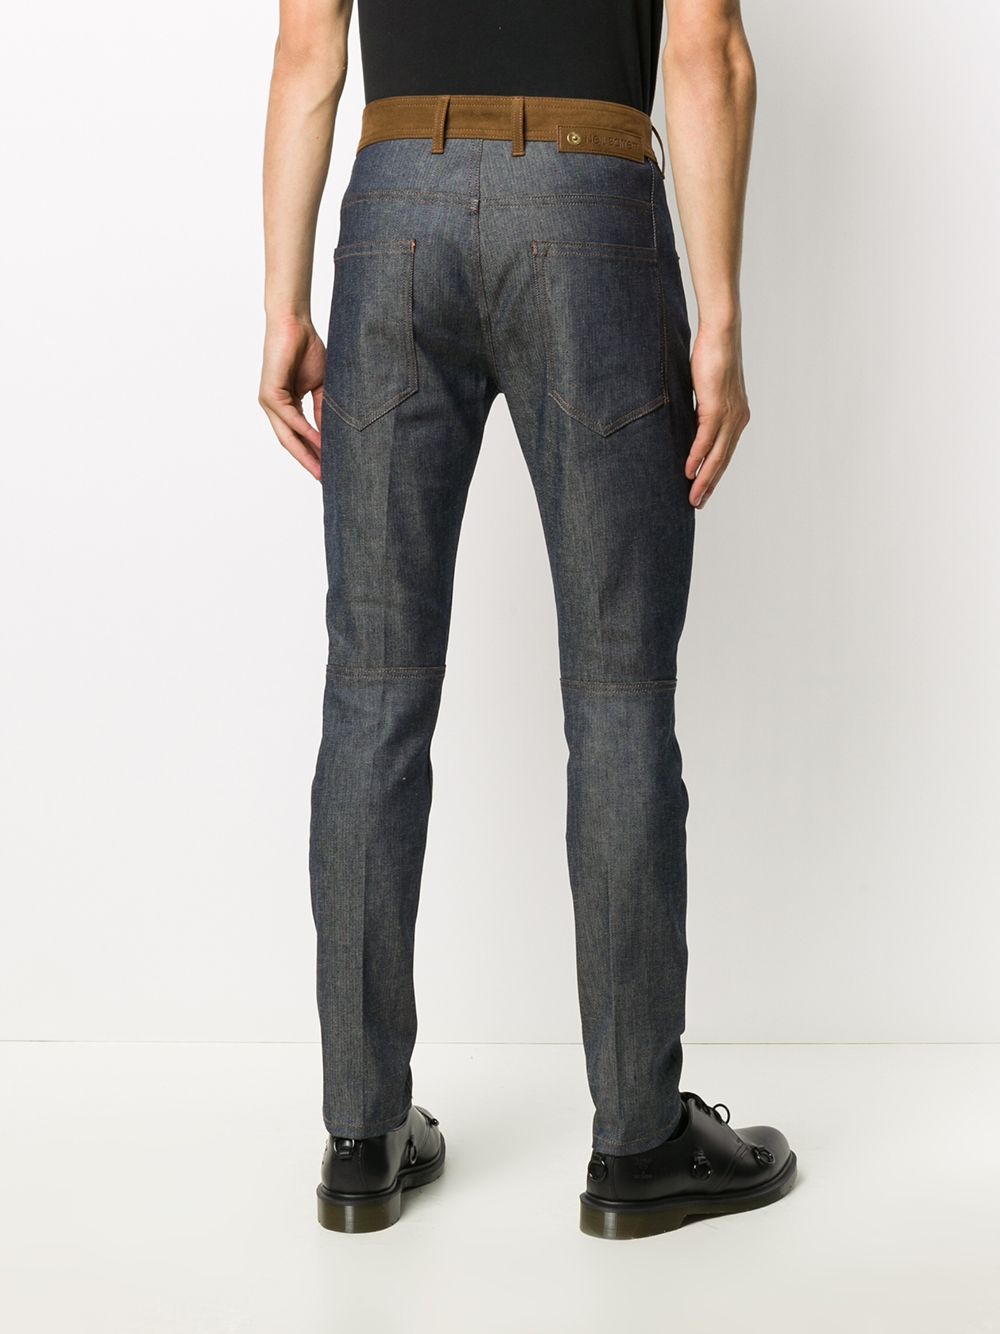 фото Neil barrett узкие джинсы с контрастными вставками